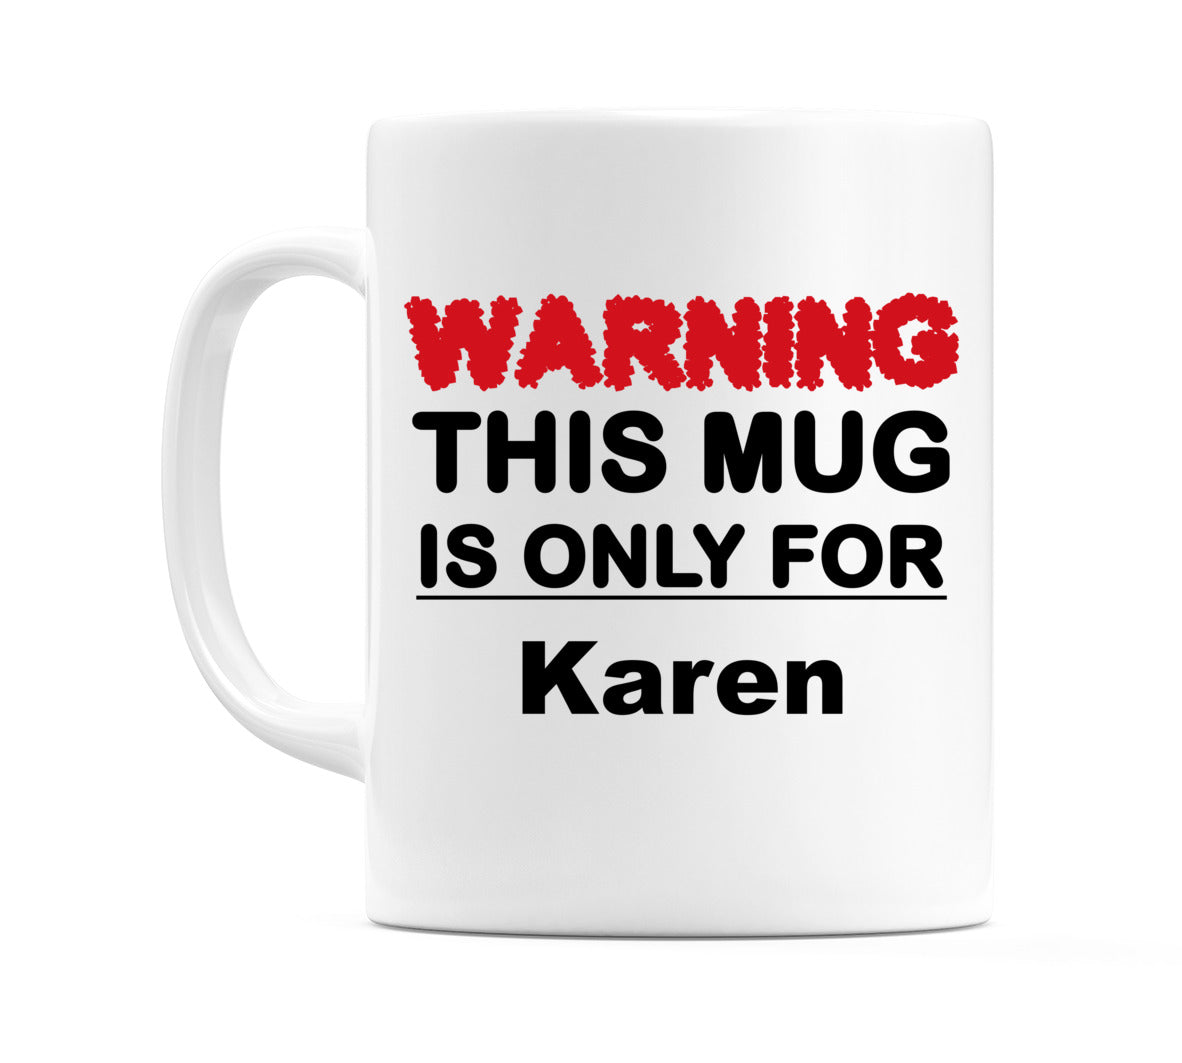 Warning This Mug is ONLY for Karen Mug